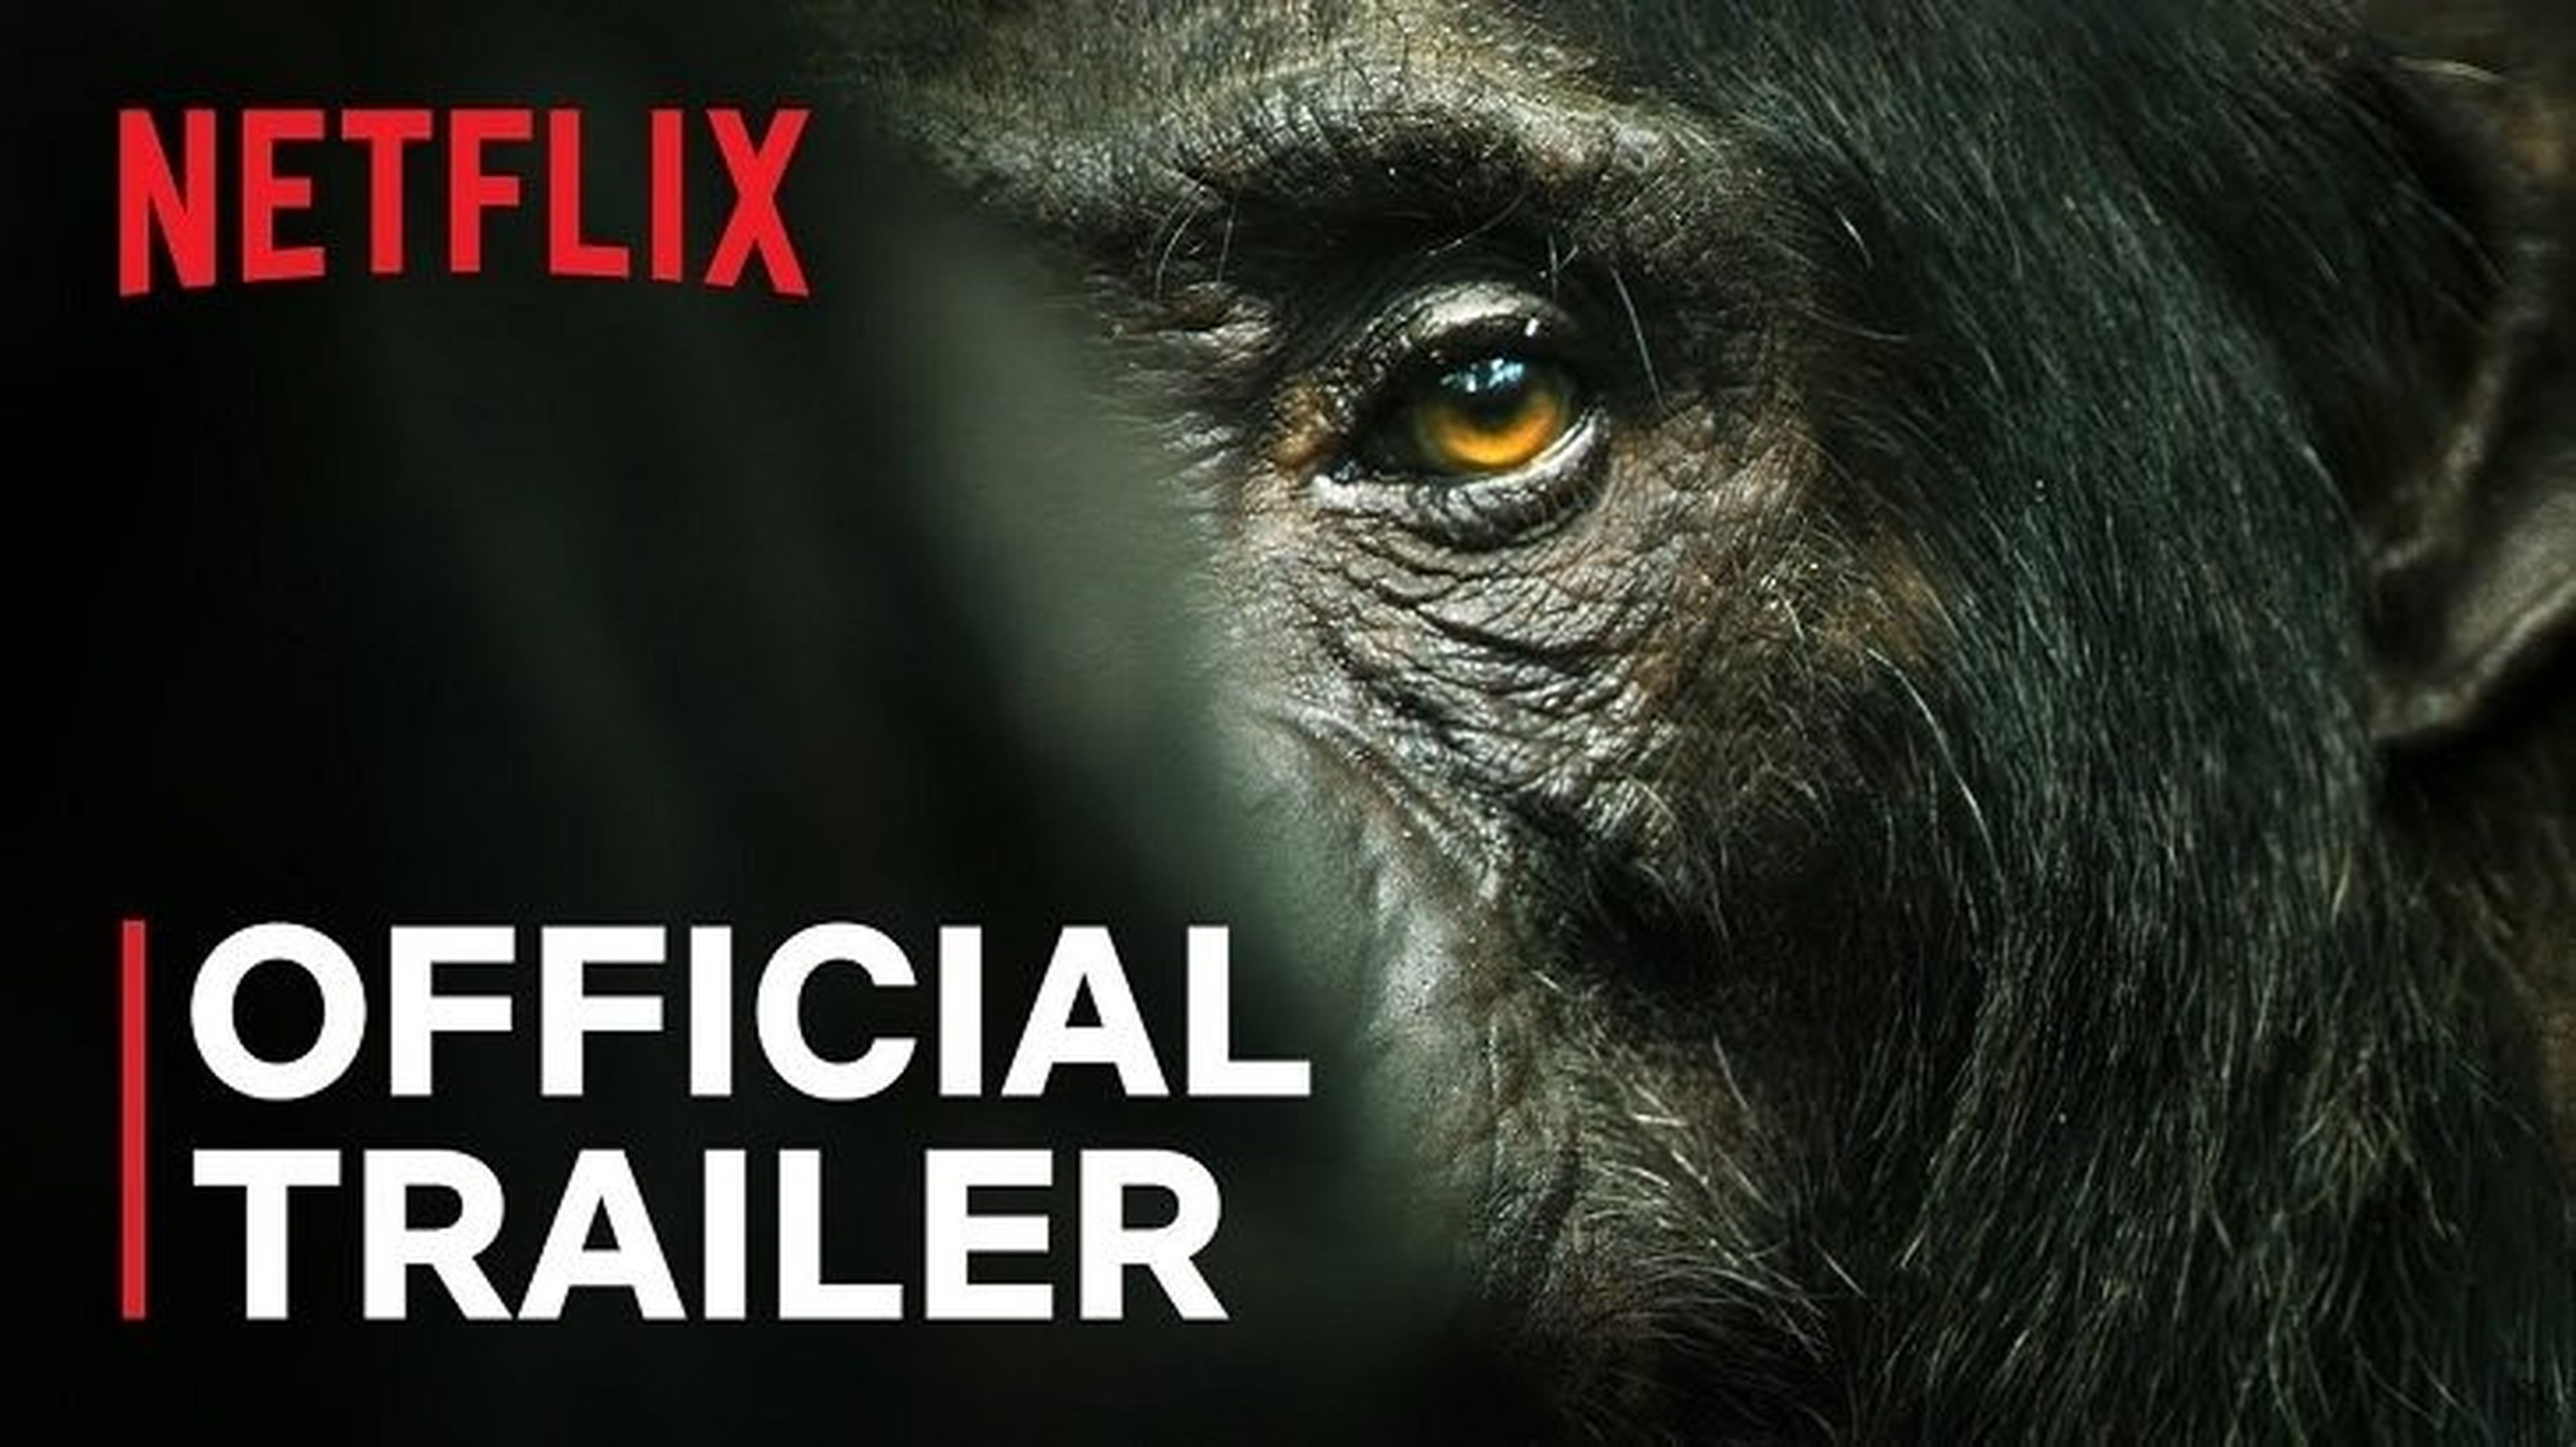 Qué series ver este fin de semana en Netflix, Amazon Prime Video y Filmin: chimpancés, crímines y gore